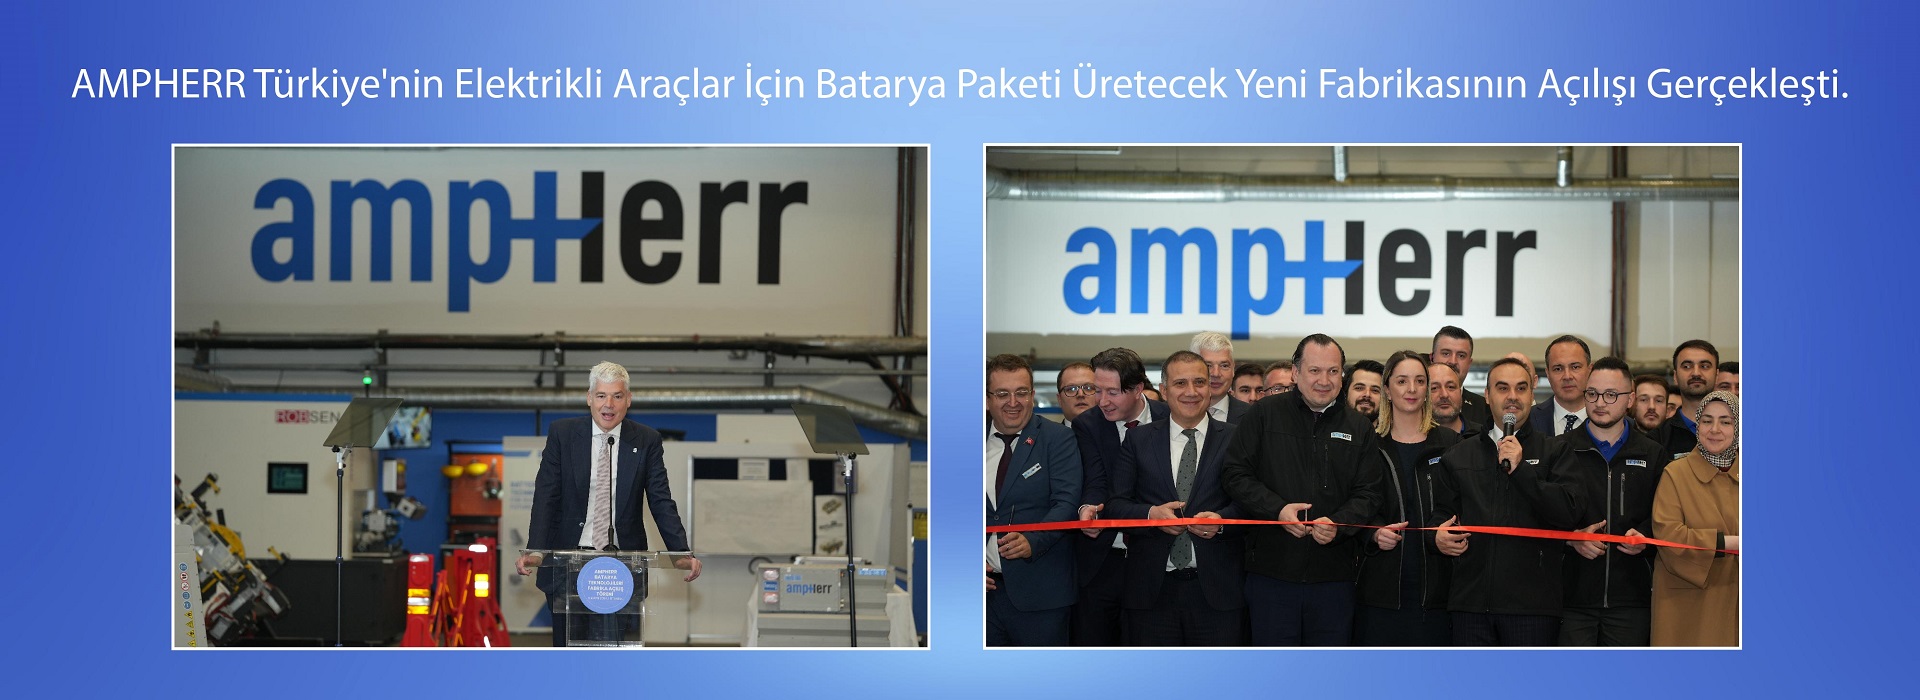 AMPHERR Türkiye'nin, Elektirikli Araçlar için Batarya Paketi Üretecek Yeni Fabrikasının Açılışı Gerçekleşti.